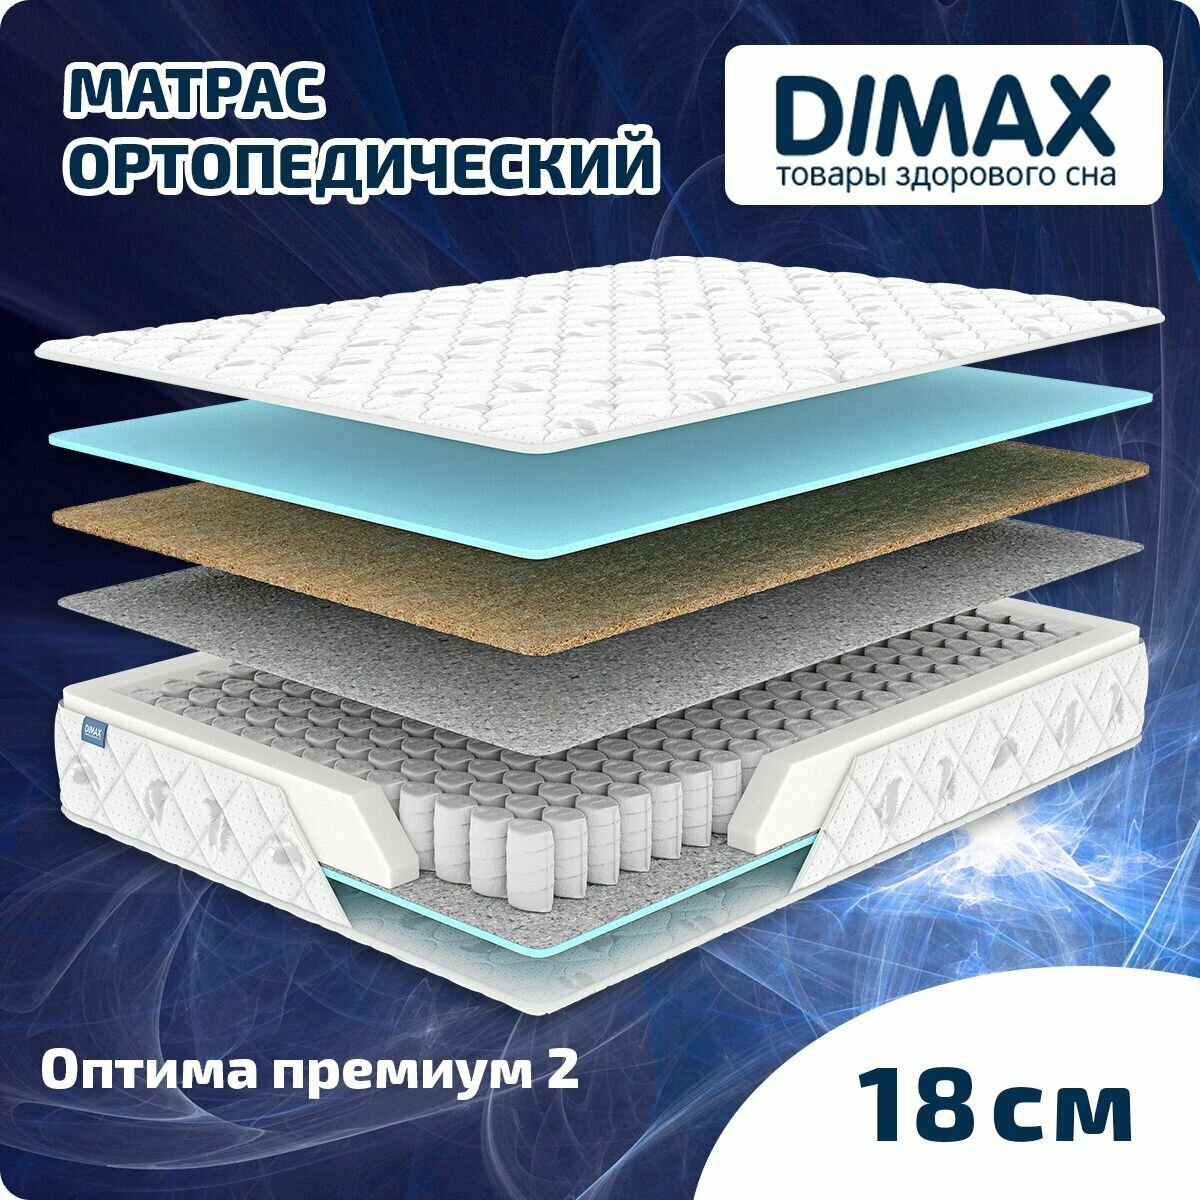 Матрас Dimax Оптима премиум 2 90x200